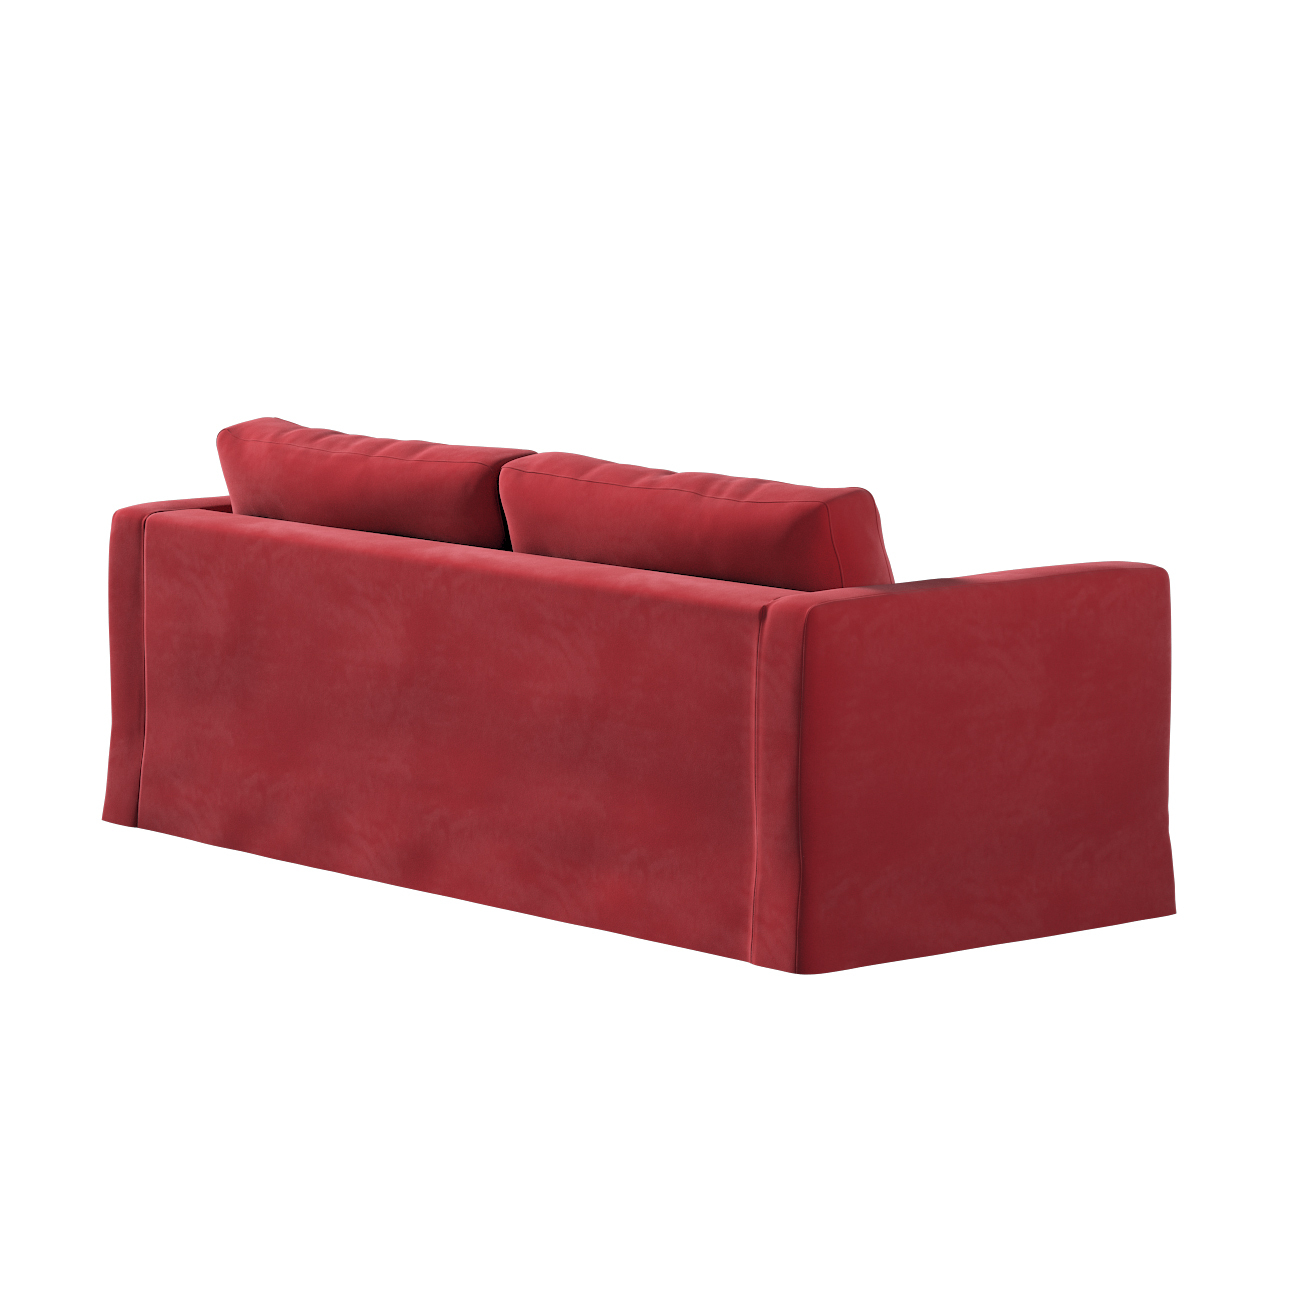 Bezug für Karlstad 3-Sitzer Sofa nicht ausklappbar, lang, rot, Bezug für So günstig online kaufen